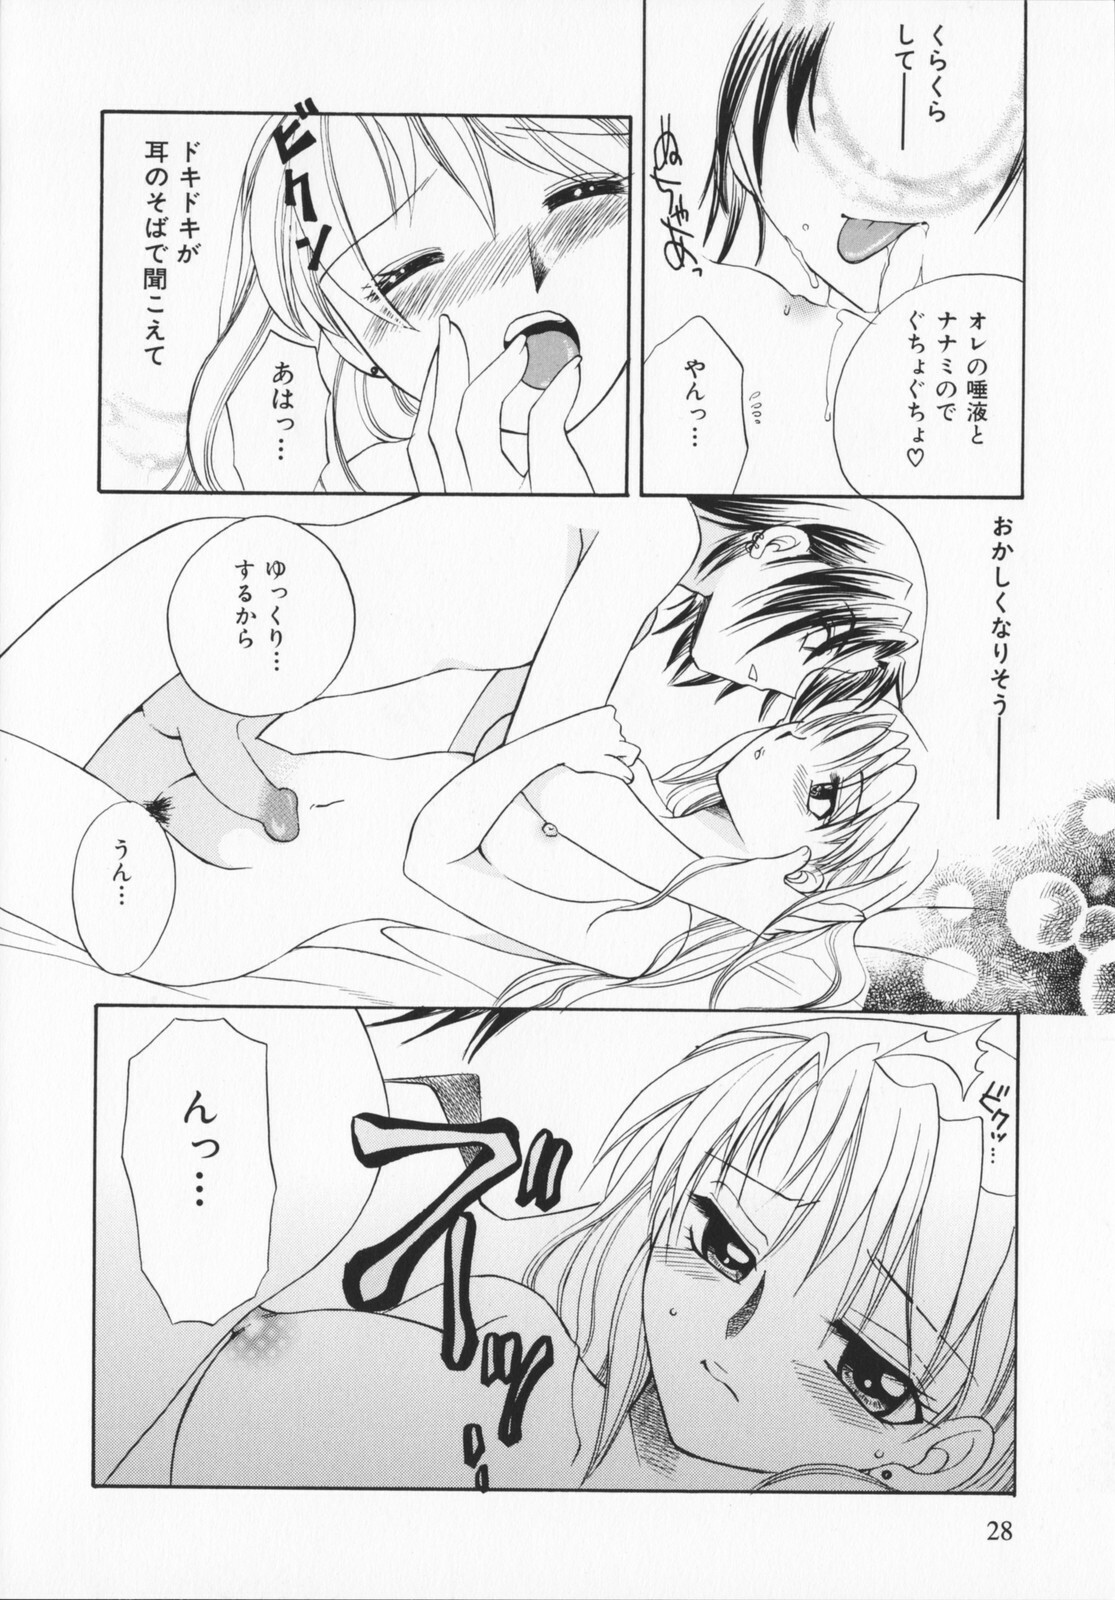 [Ureshino Megumi]Genkaiharetsu (LIMIT EXPLOSION) page 27 full